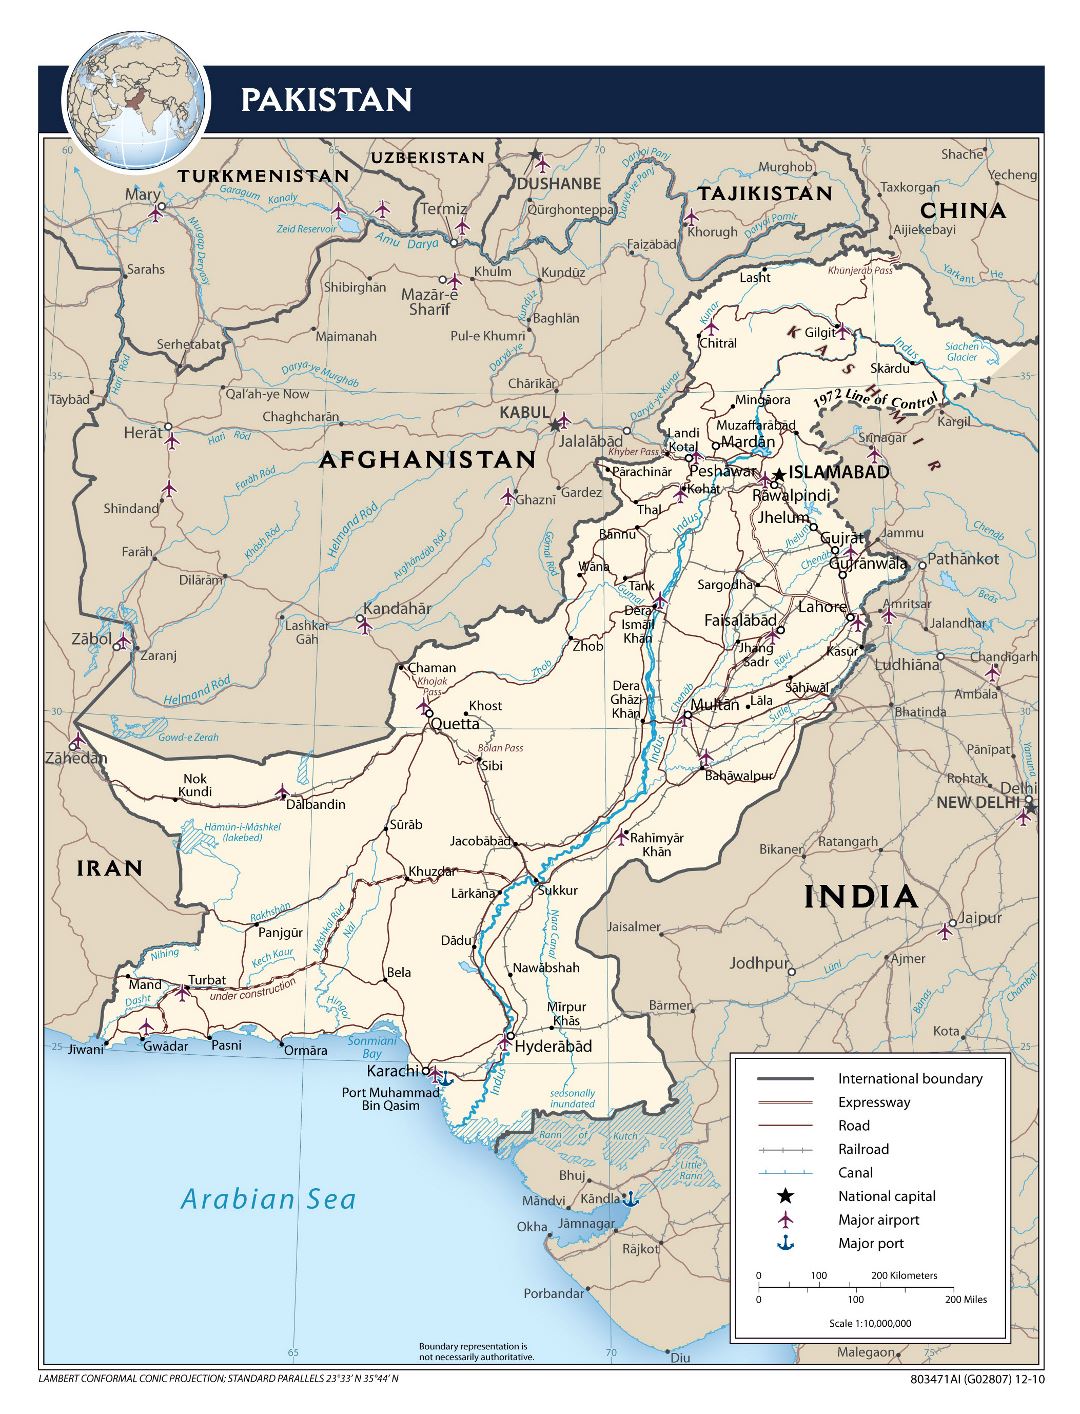 Большая политическая карта Пакистана с дорогами, железными дорогами, городами, аэропортами, портами и другими пометками - 2010